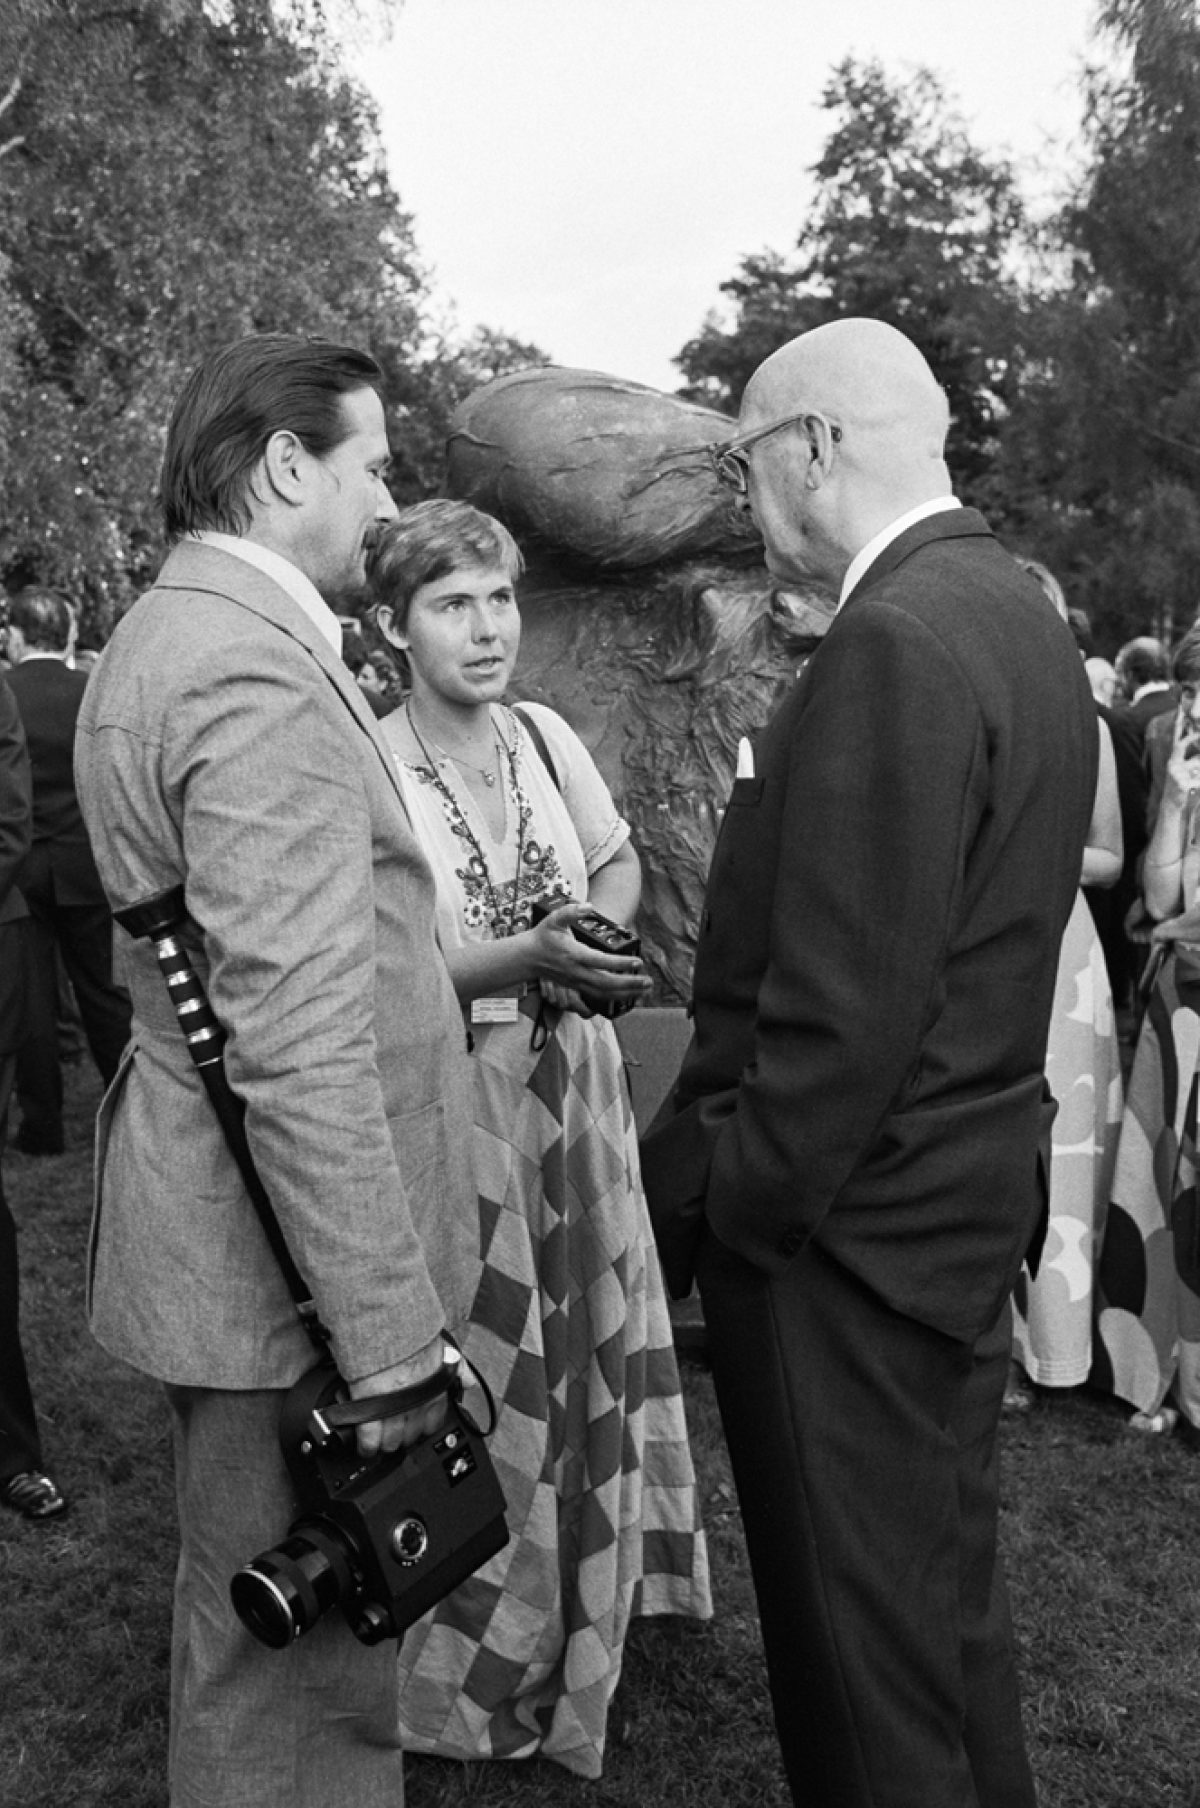 President Urho Kekkonen (on the right) is talking with Mikko Niskanen and Maarit Tyrkkö at Kalastajatorppa during CSCE on 31 July 1975. Photo: PF-team / Pressfoto Zeeland / JOKA / Finnish Heritage Agency